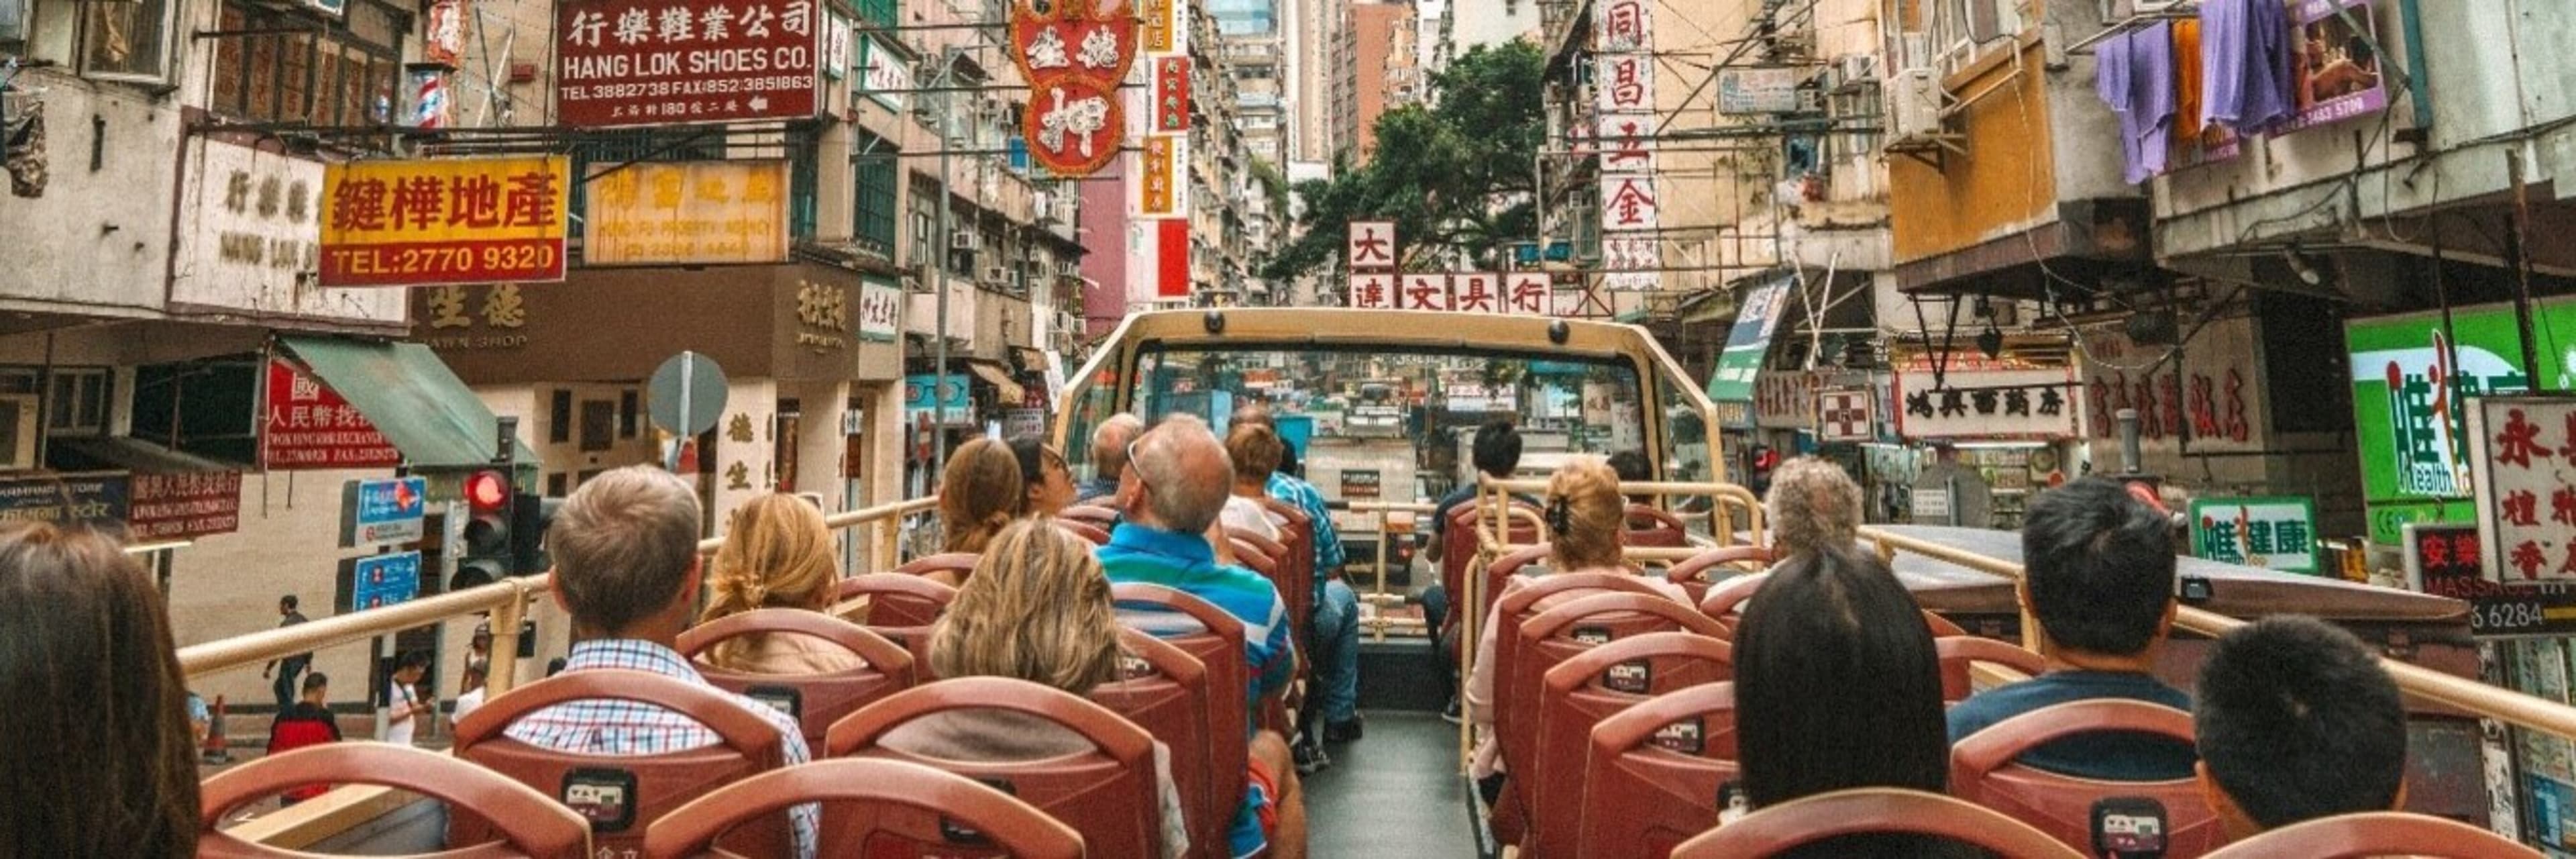 Big Bus Hong Kong